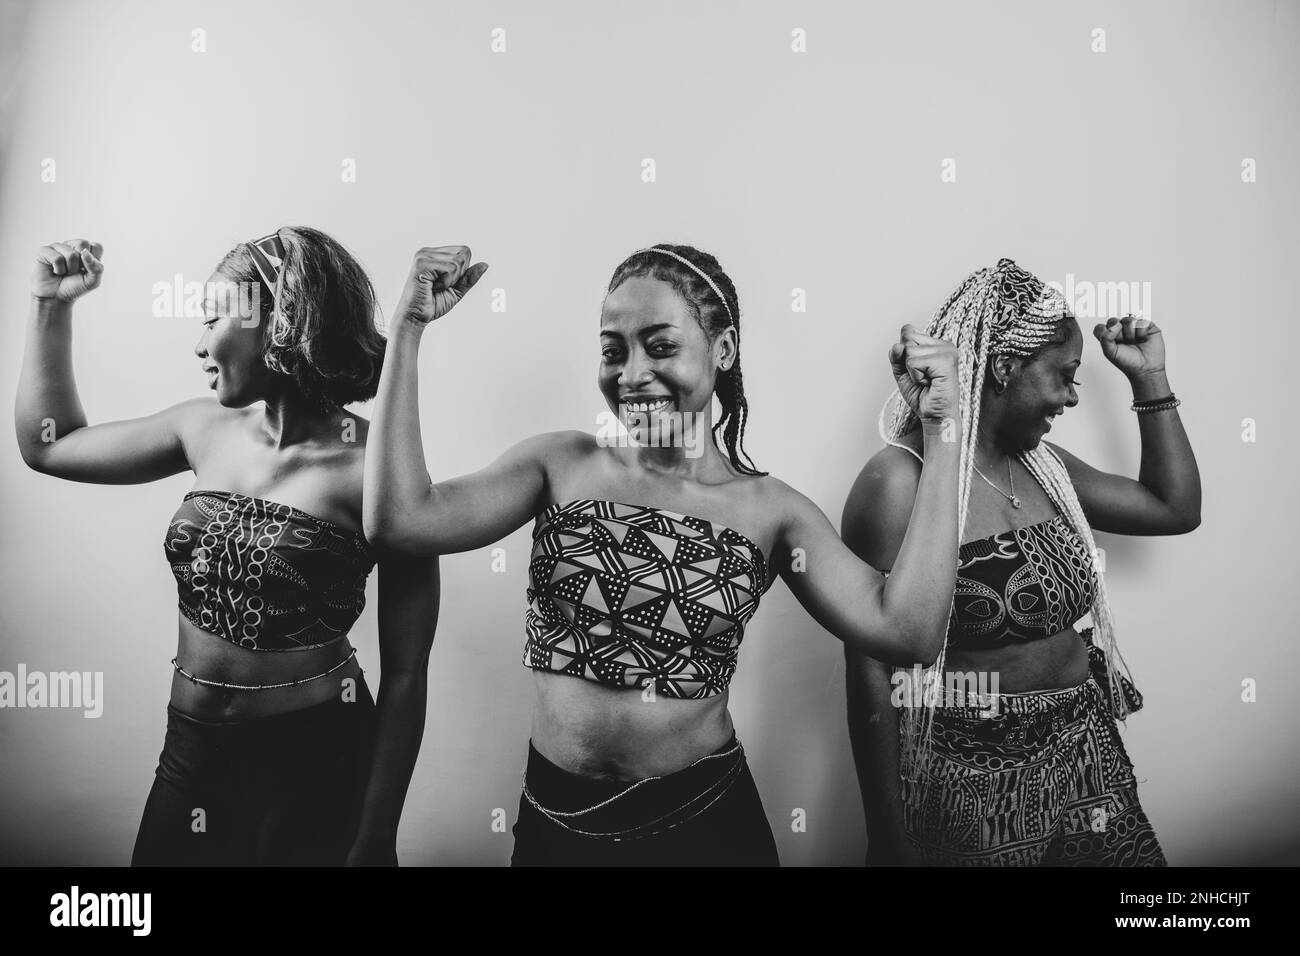 Schwarzweißfoto von drei afrikanischen Frauen, die ihren Bizeps heben, das Konzept "mächtige Frauen". Stockfoto